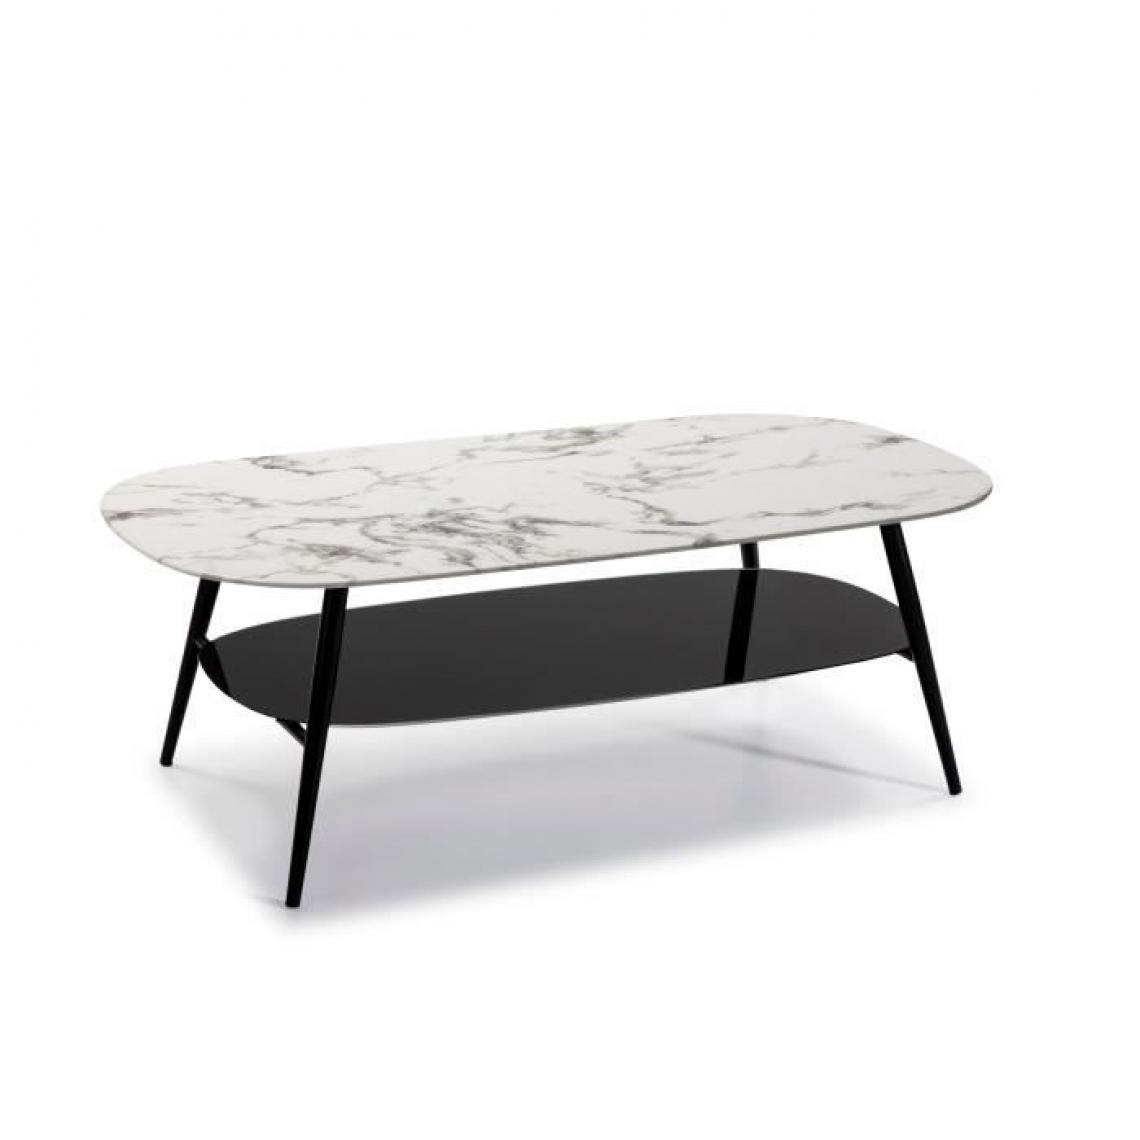 Cstore - Table de salon ovale - Verre Marbré blanc et noir - L 120 x P 60 x H 45 cm - Tables basses